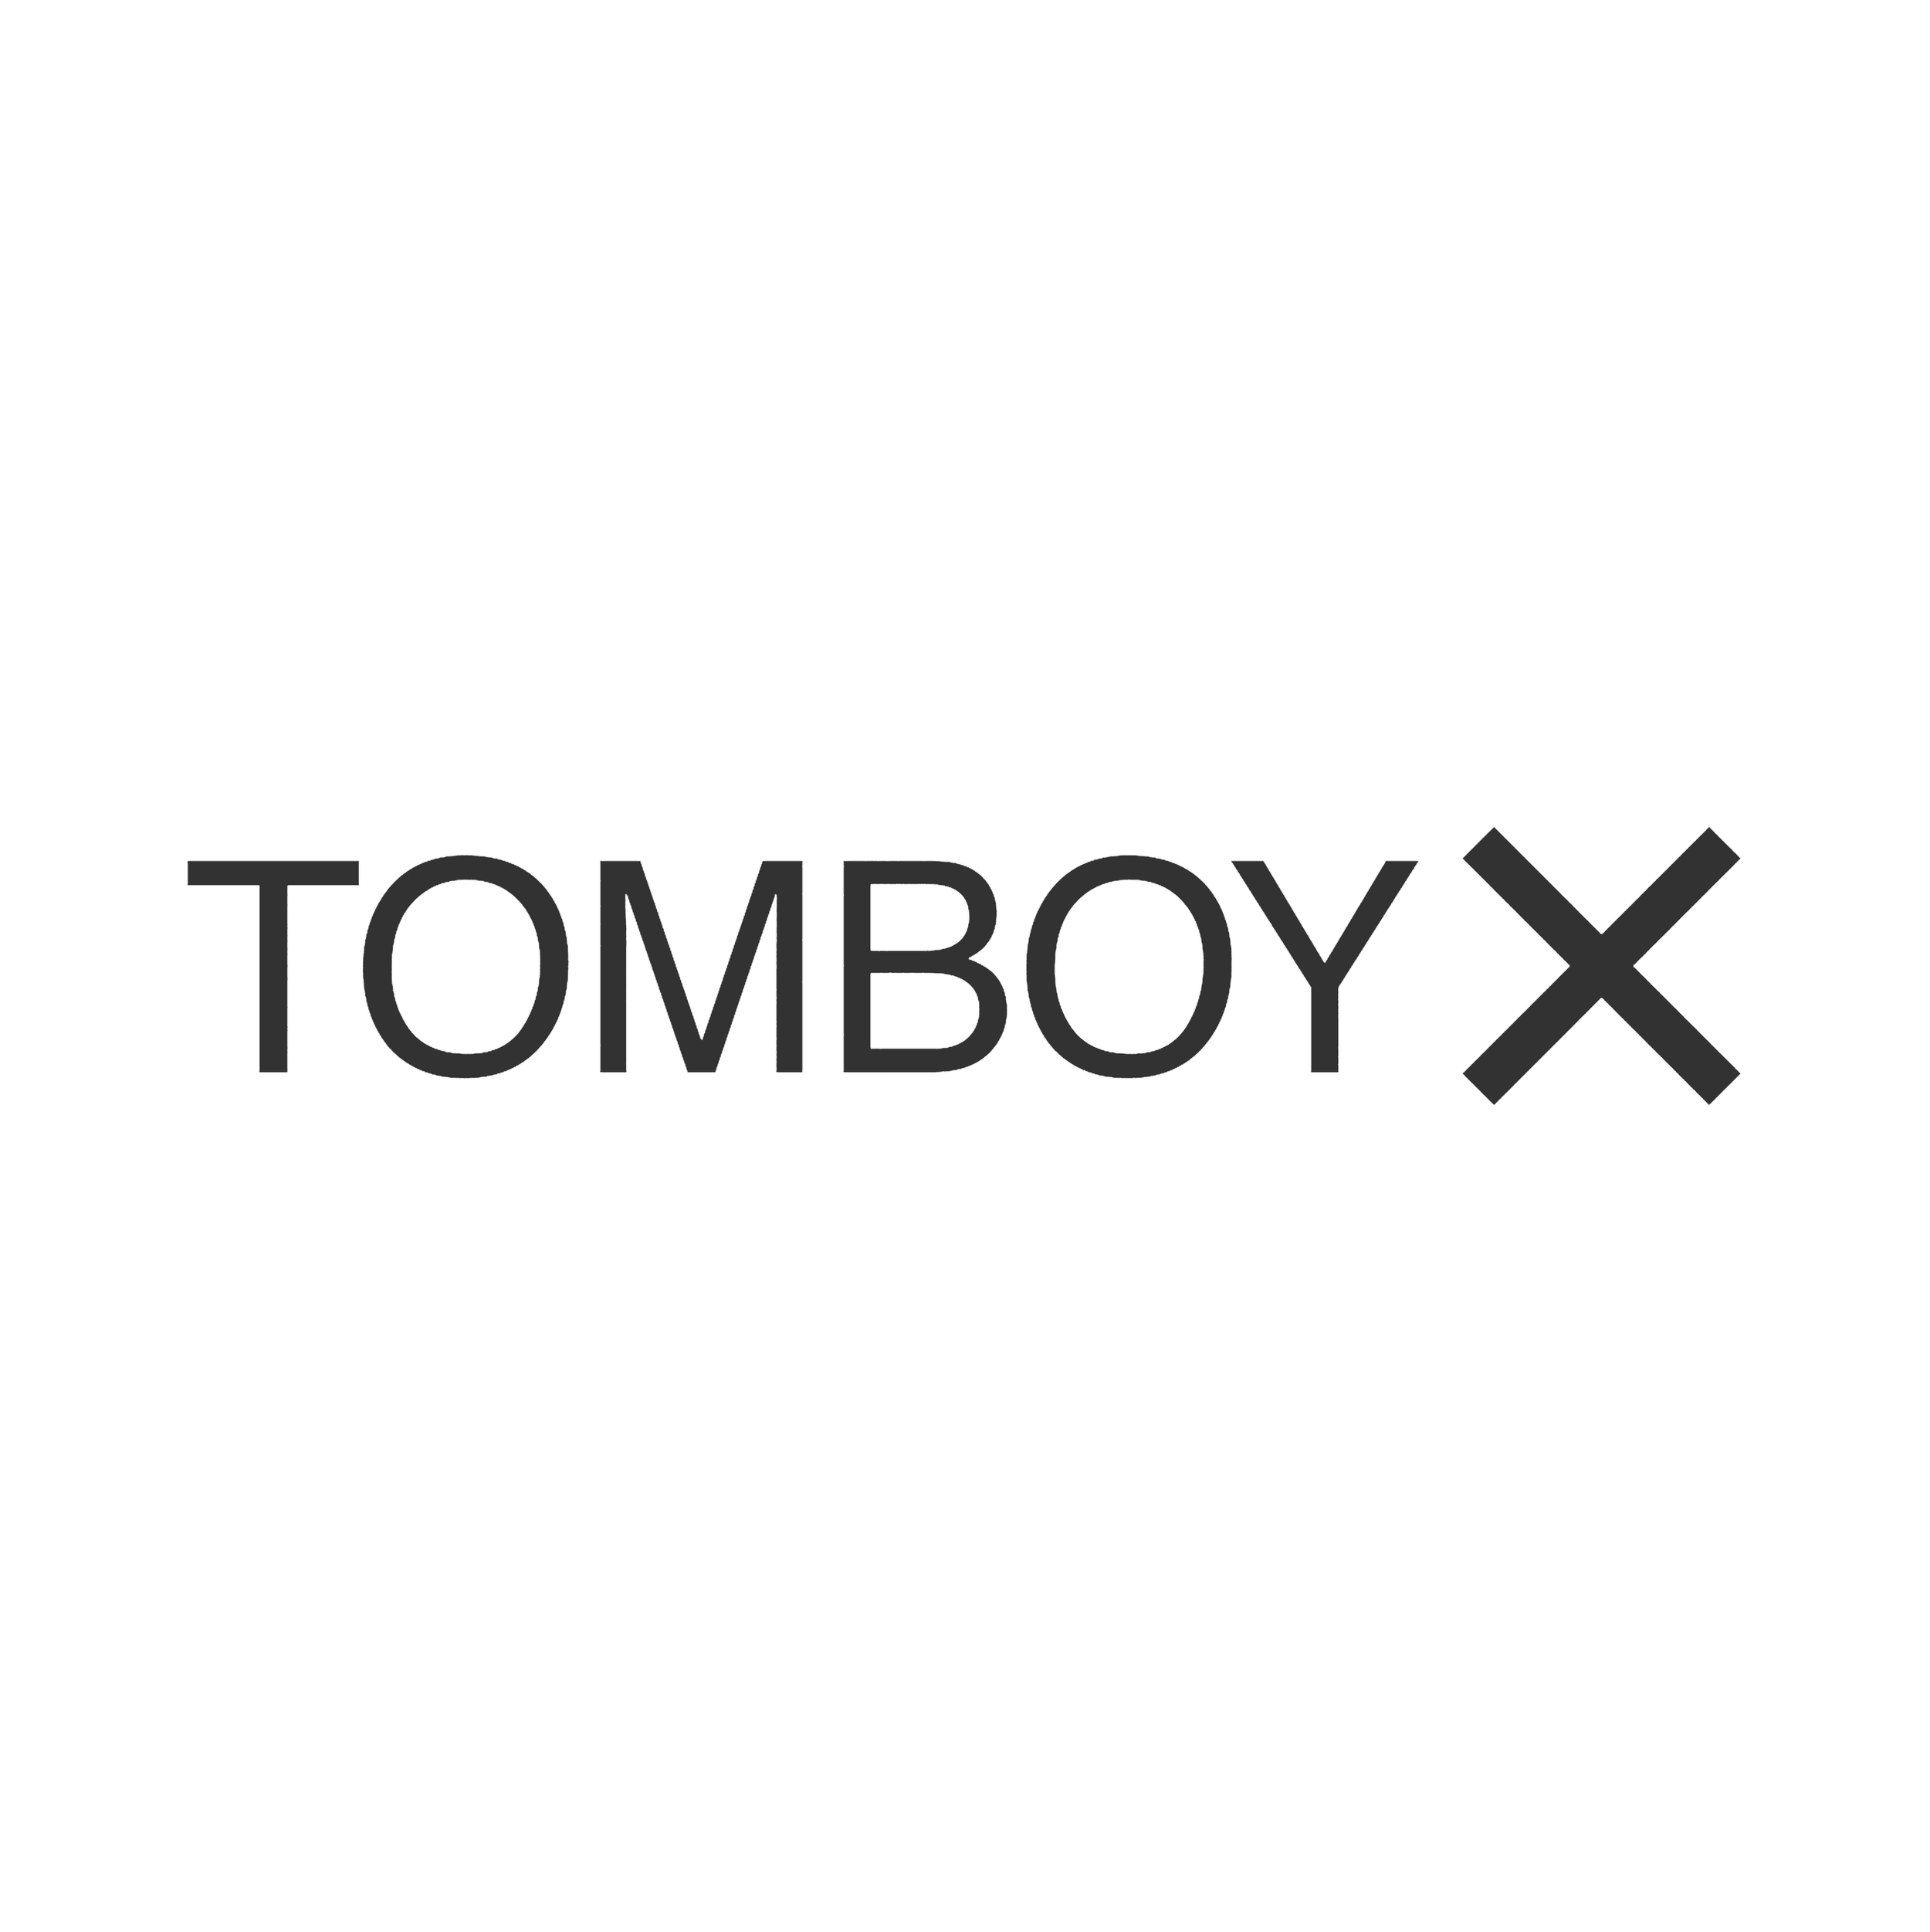 TomboyX_Logo_Black_1_9fa5a1a6-4cc3-4a2d-9dbf-8e0fd867adfa.png